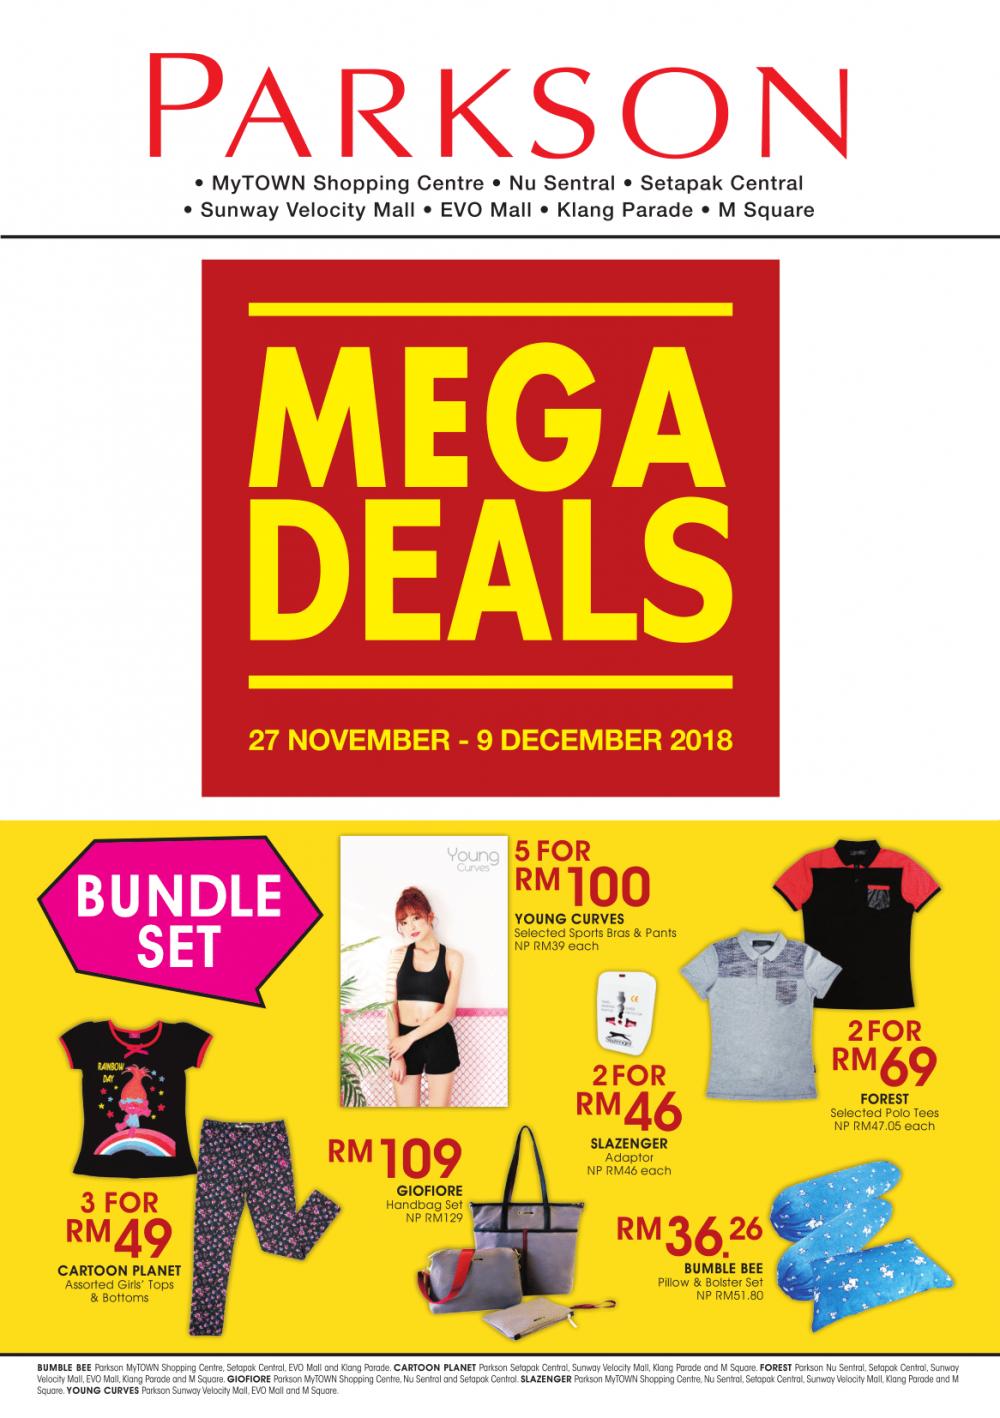 Parkson Mega Deals Promotion (27 November 2018 - 9 December 2018)